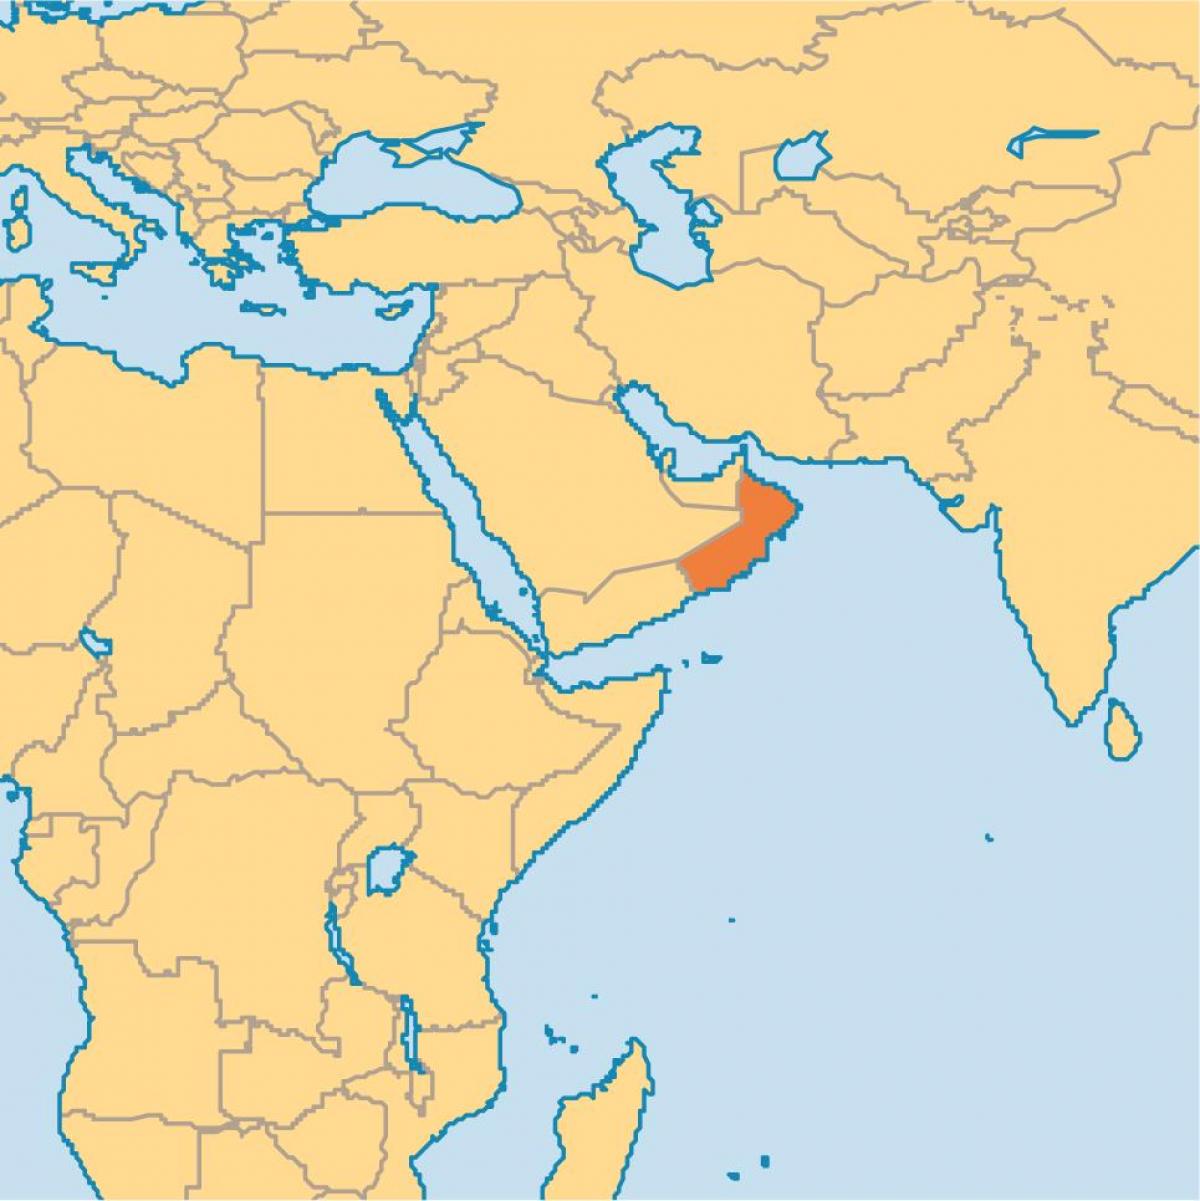 Oman peta di peta dunia